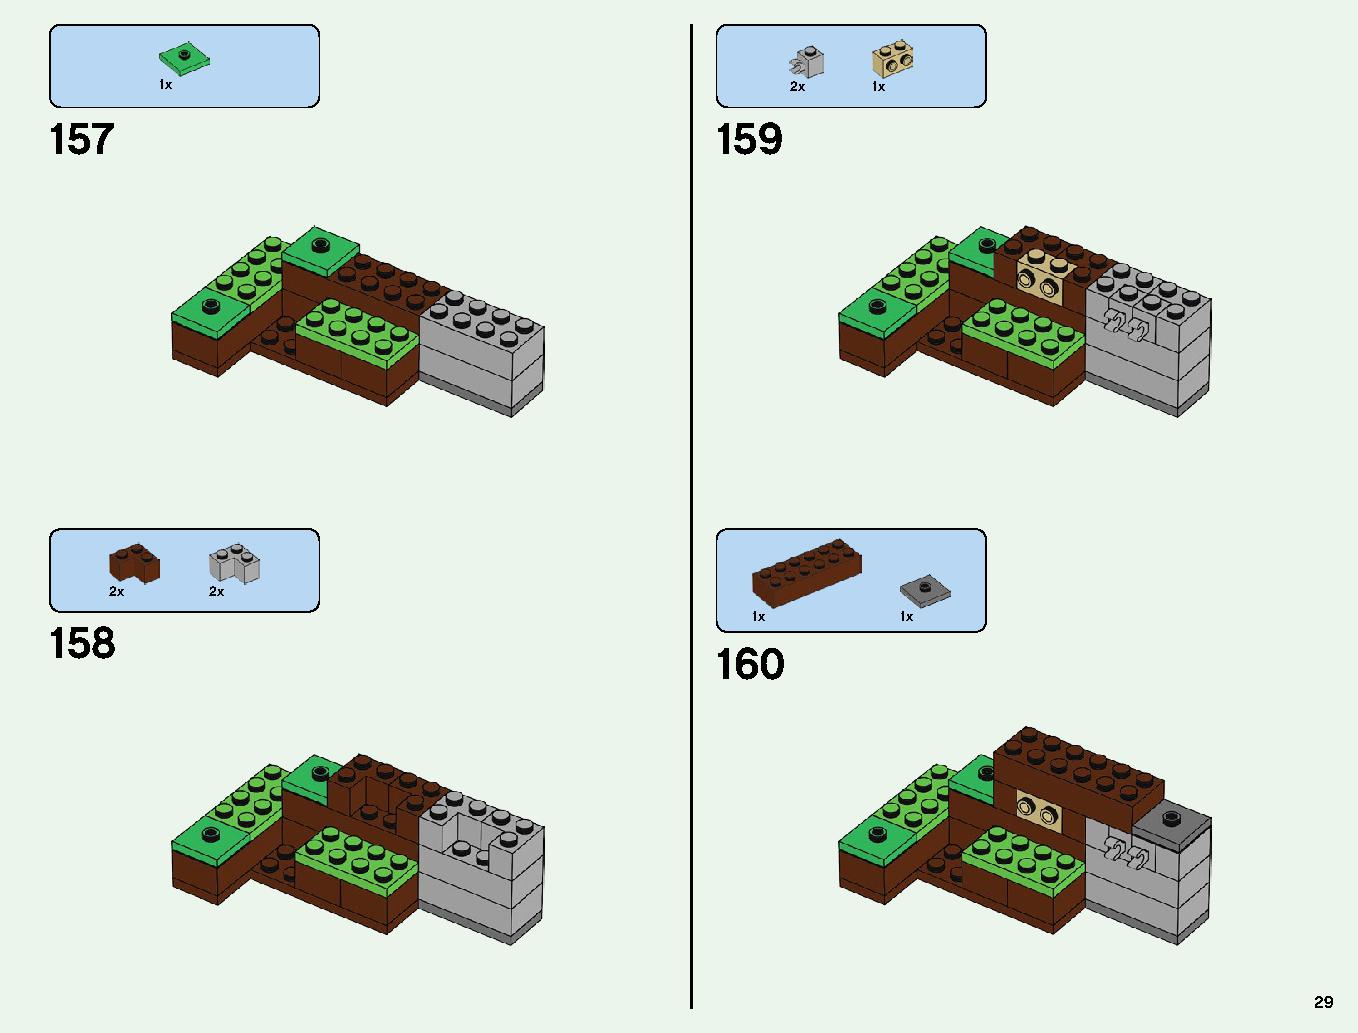 ベッドロックの冒険 21147 レゴの商品情報 レゴの説明書・組立方法 29 page